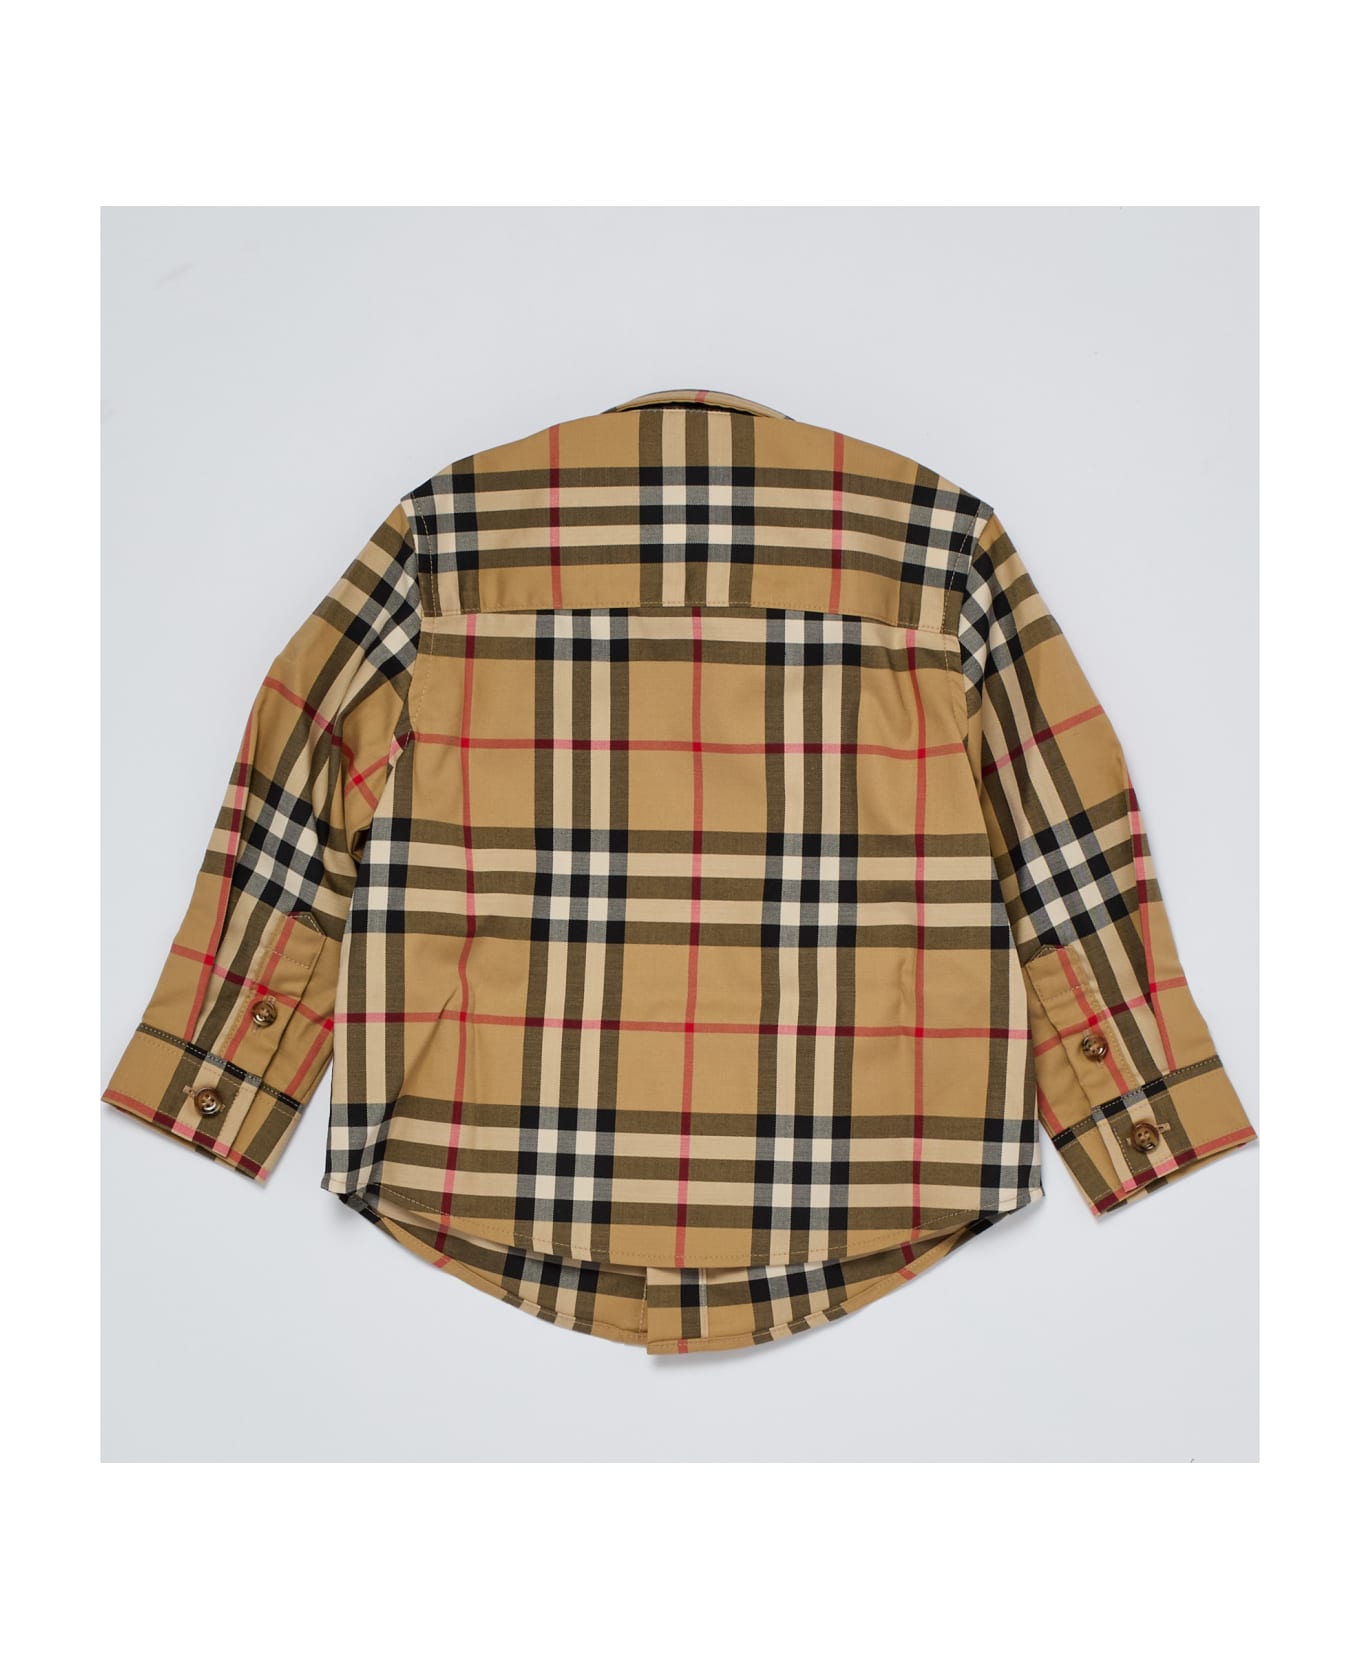 Burberry Owen Shirt Shirt - CHECK BEIGE